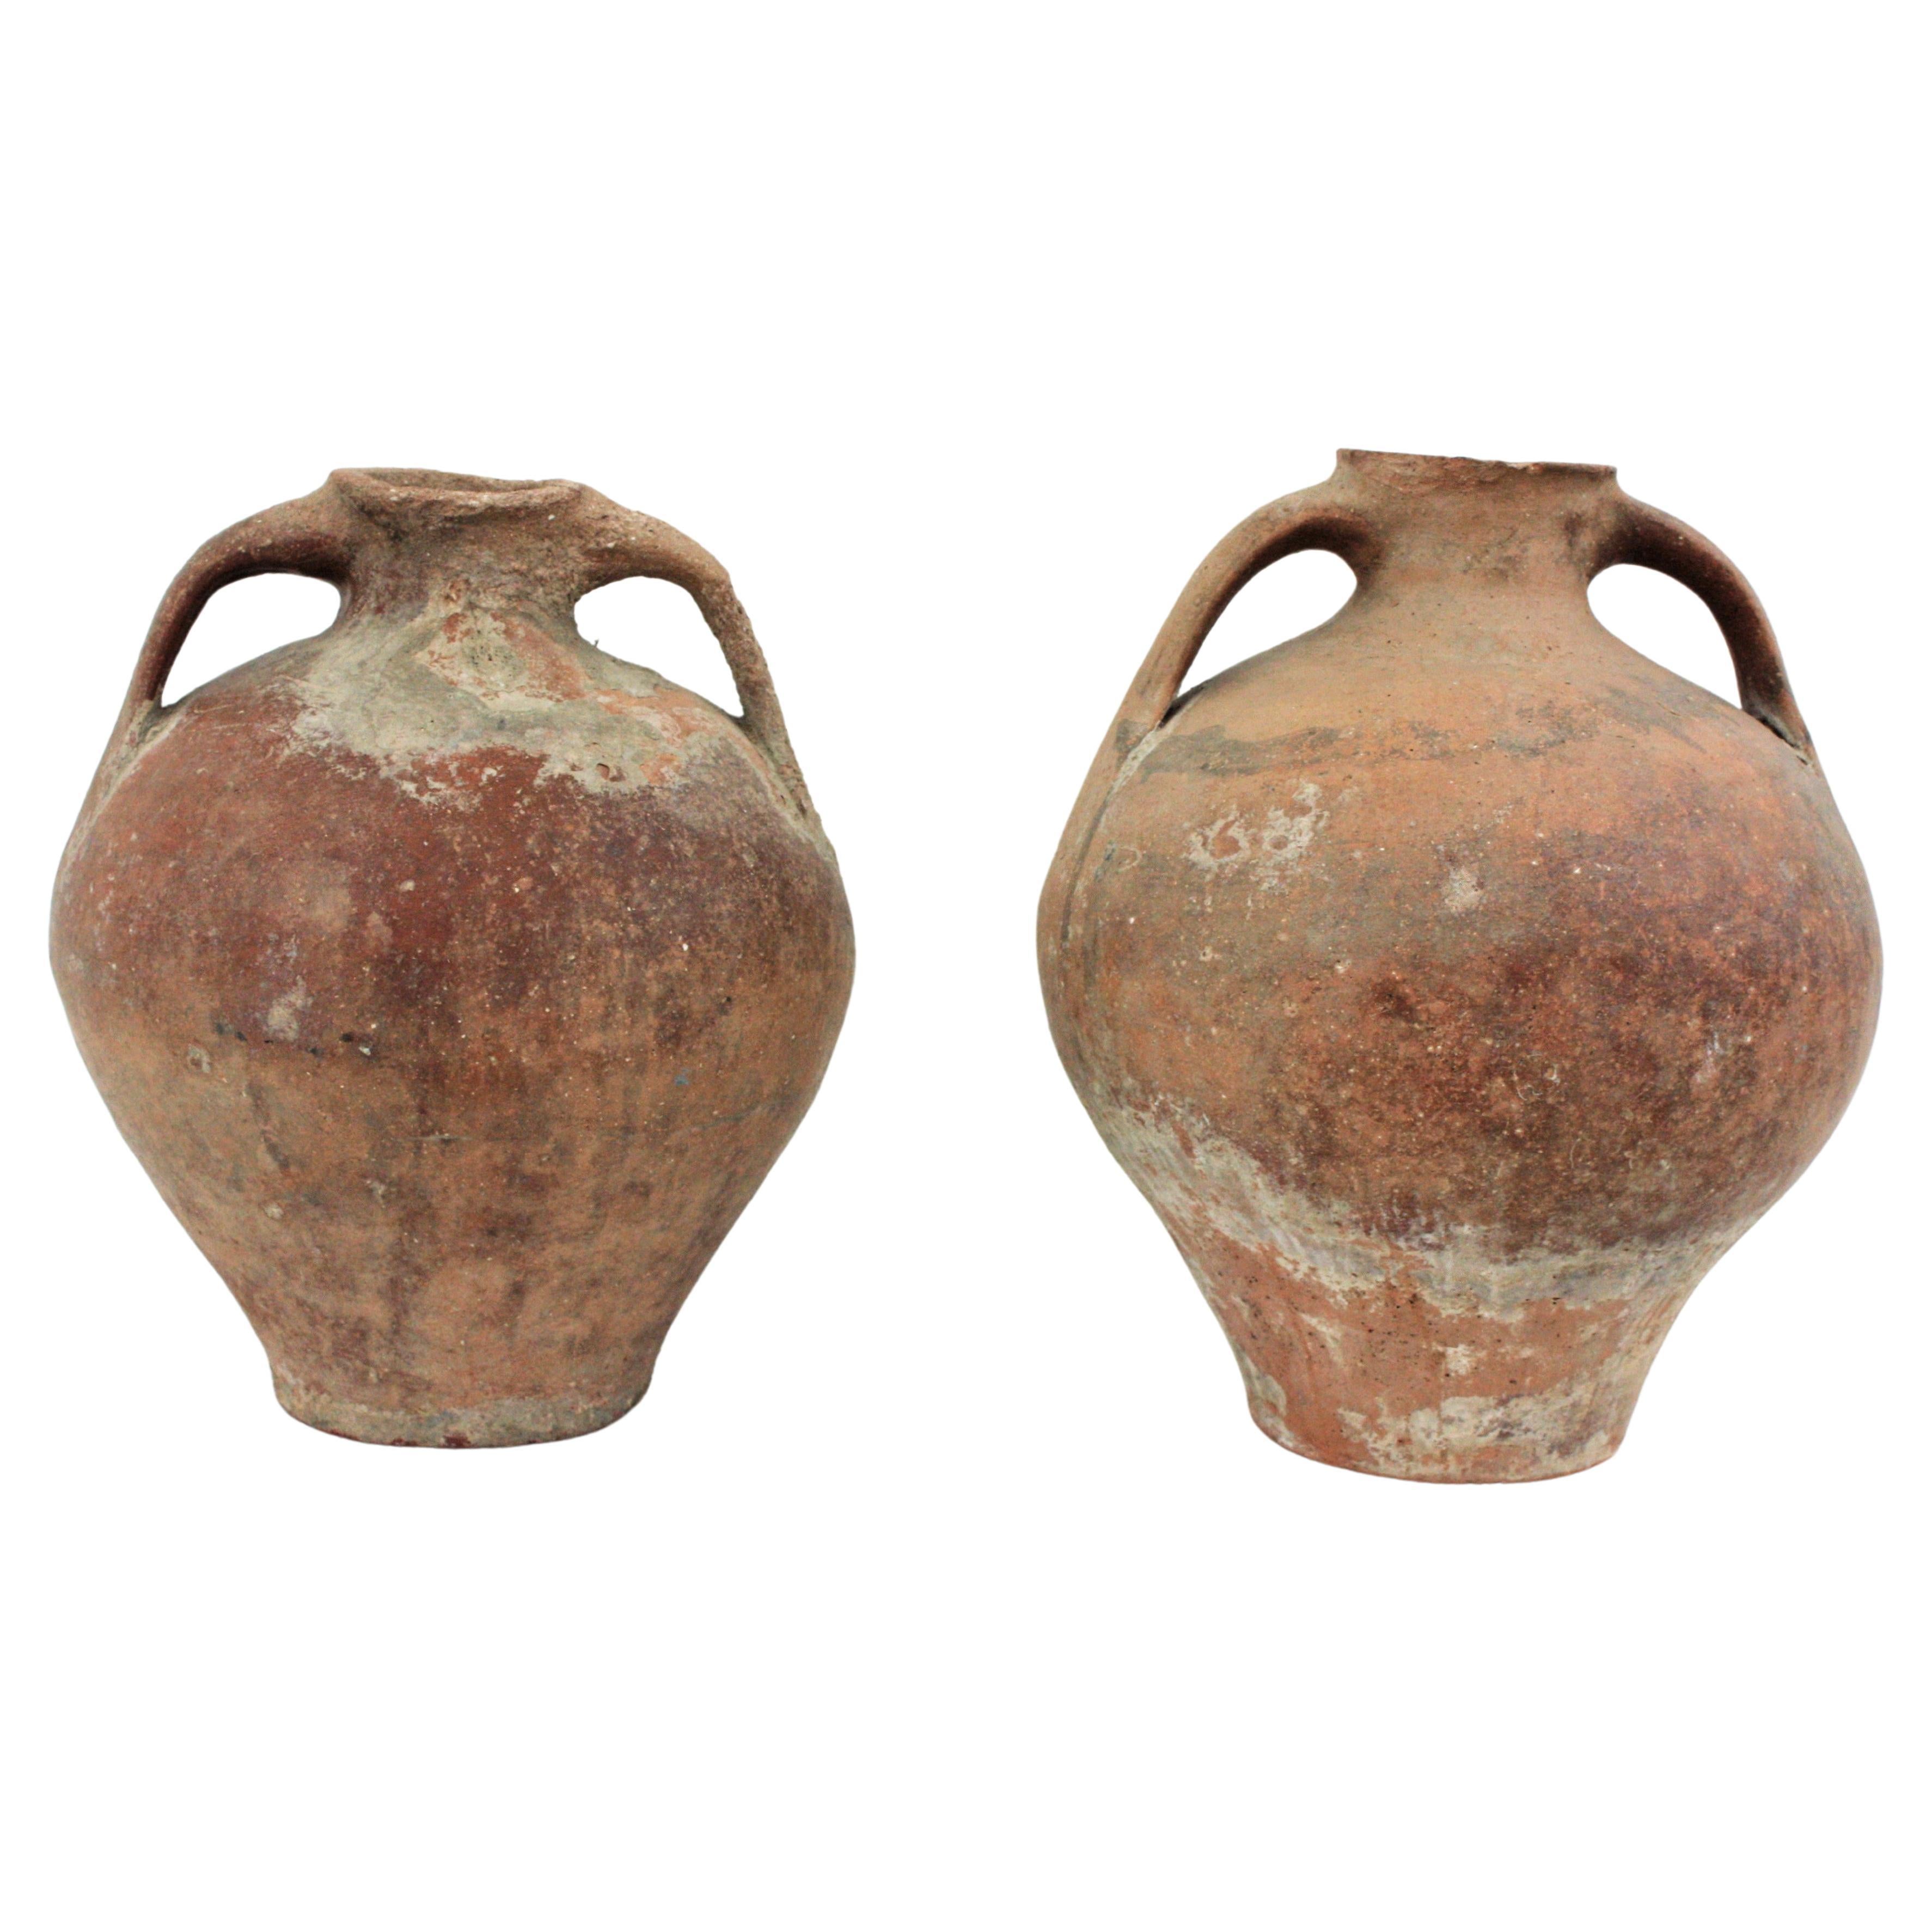 Pair of Spanish Terracotta Water Jars or Vessels